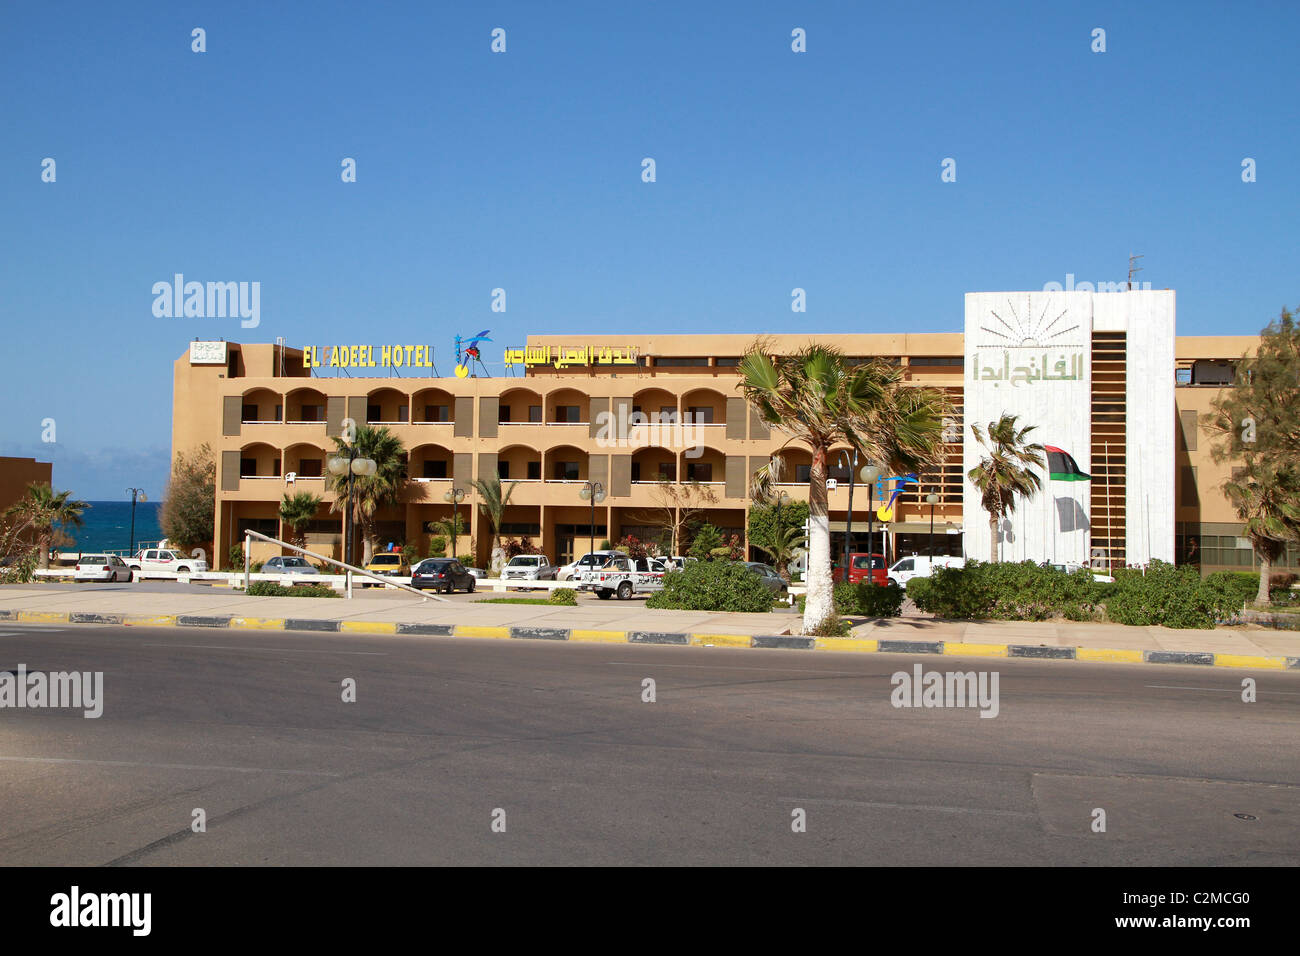 L'hôtel El Fadeel, Raz Lanuf, la Libye, l'Afrique du Nord Banque D'Images